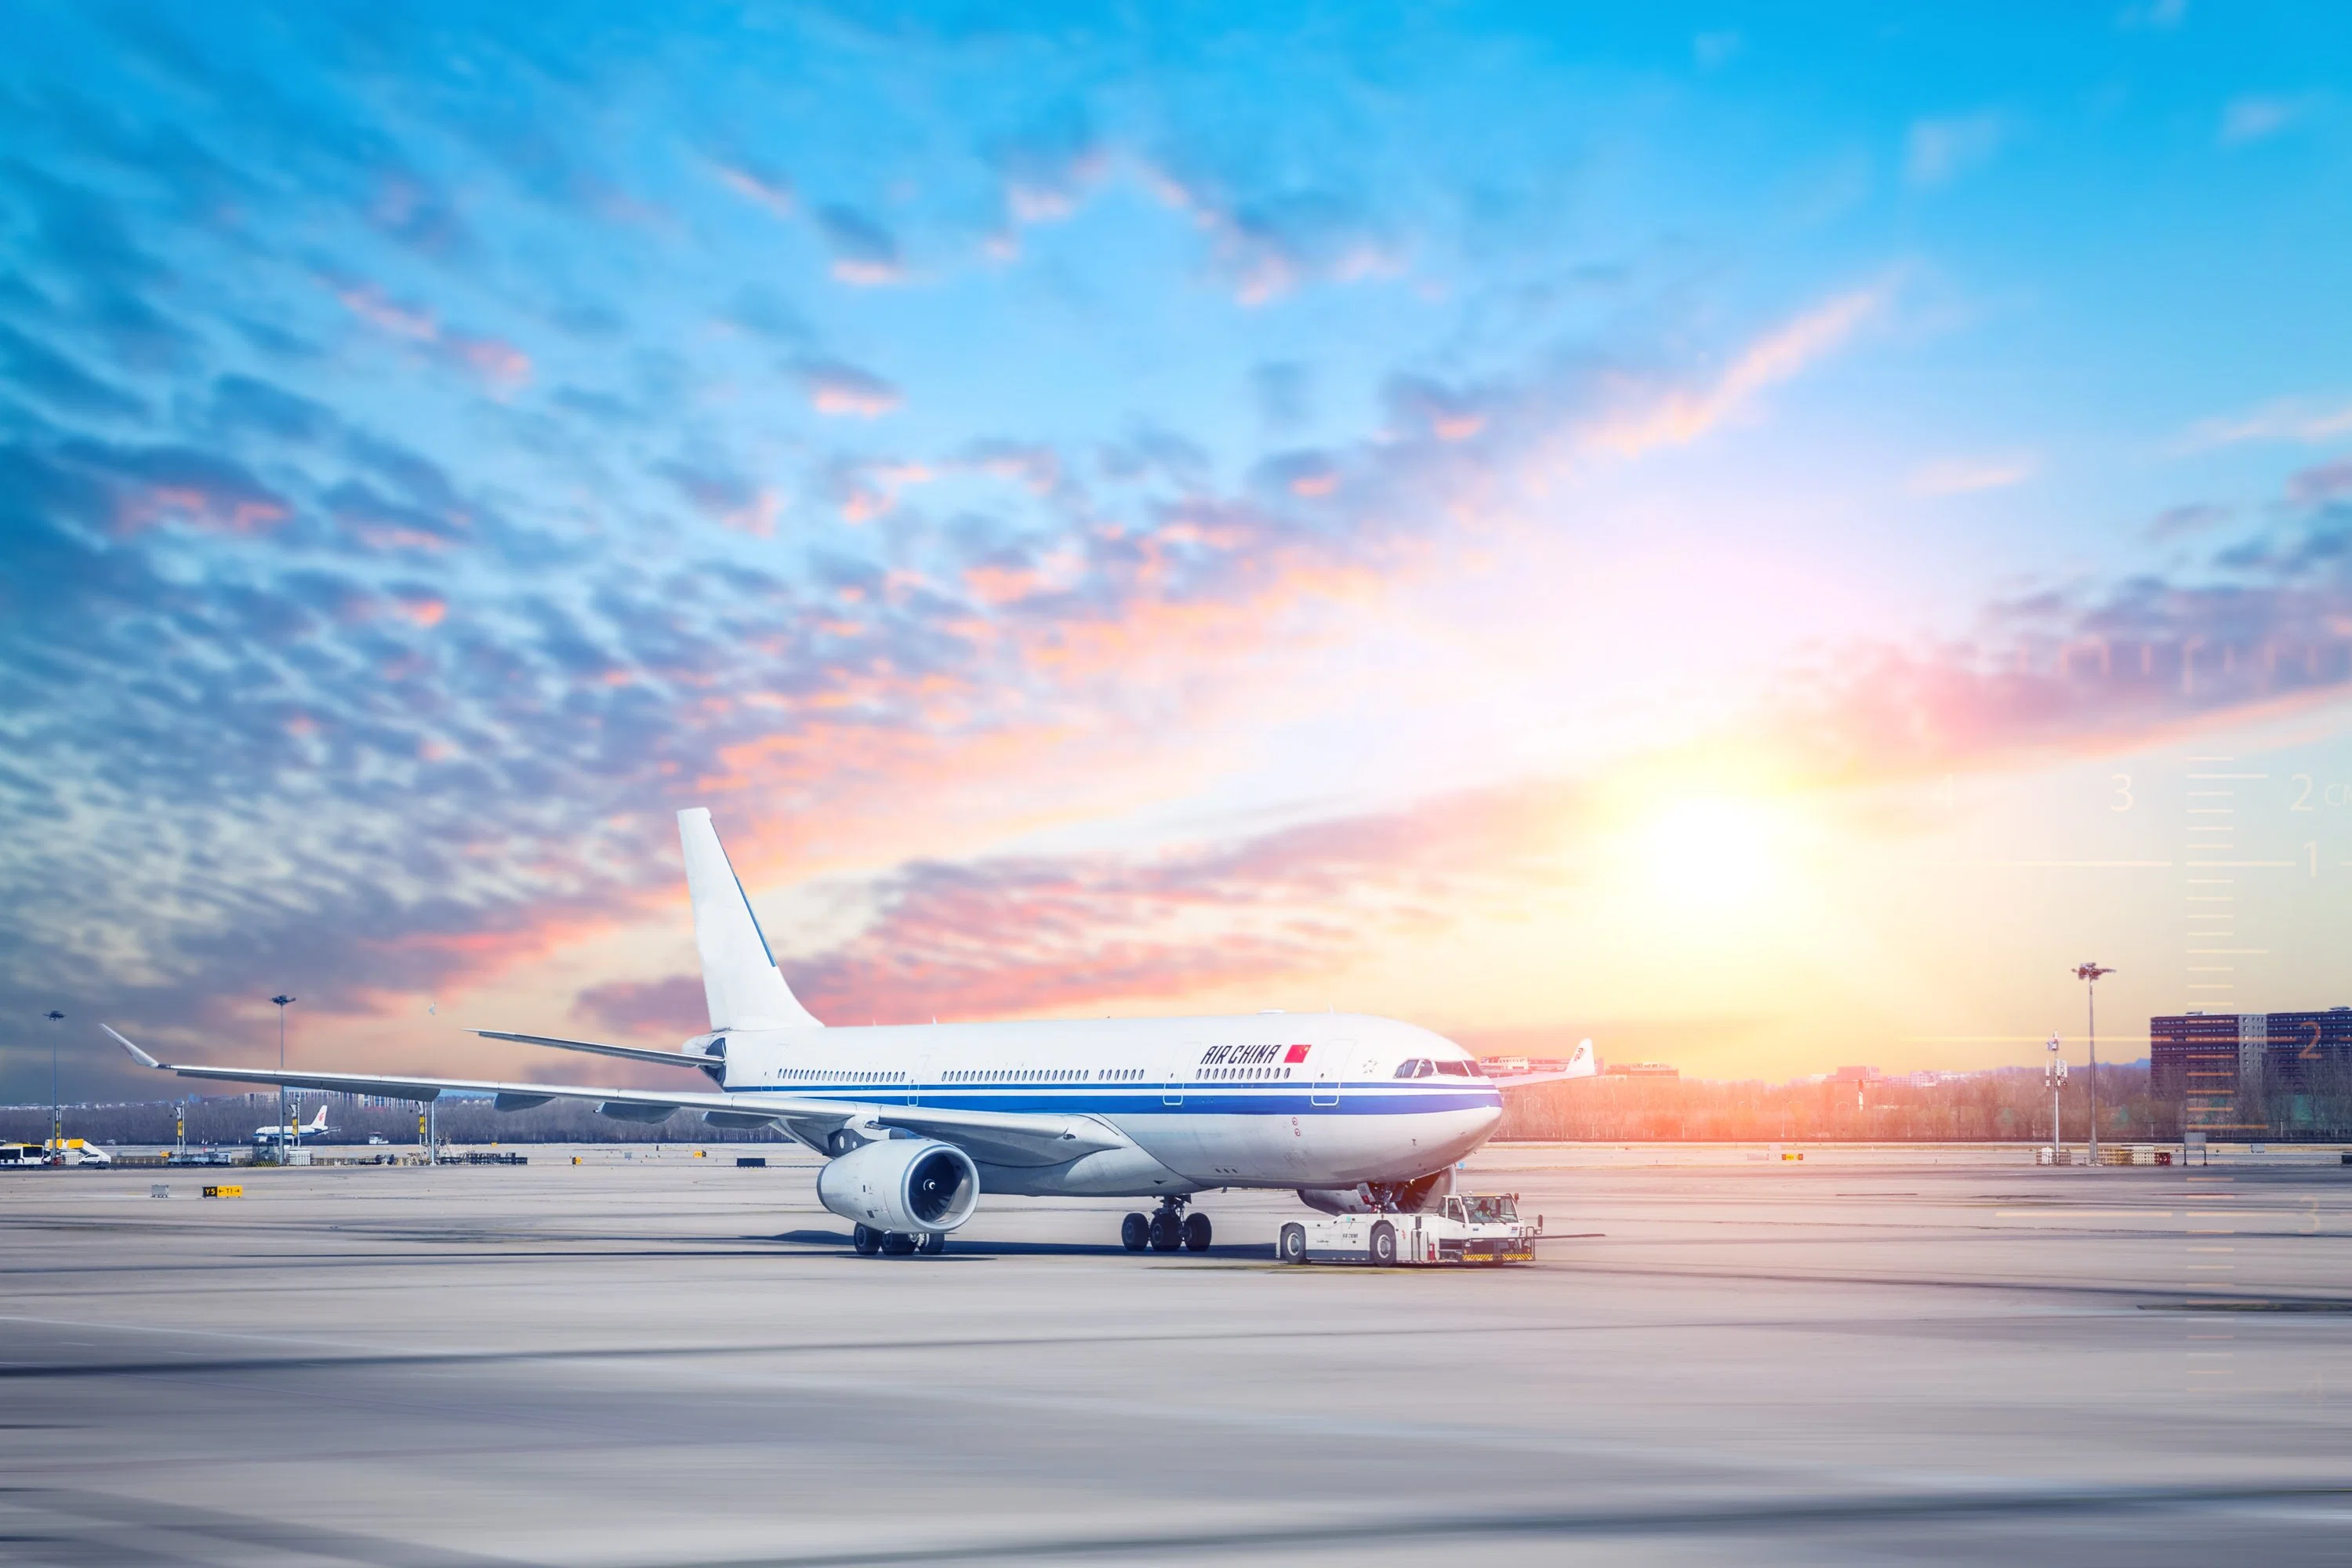 النقل الدولي للنقل والإمداد من الصين إلى دبي من باب إلى آخر شركة الطيران اللوجستيات شركة الشحن السريع أحجز موقع